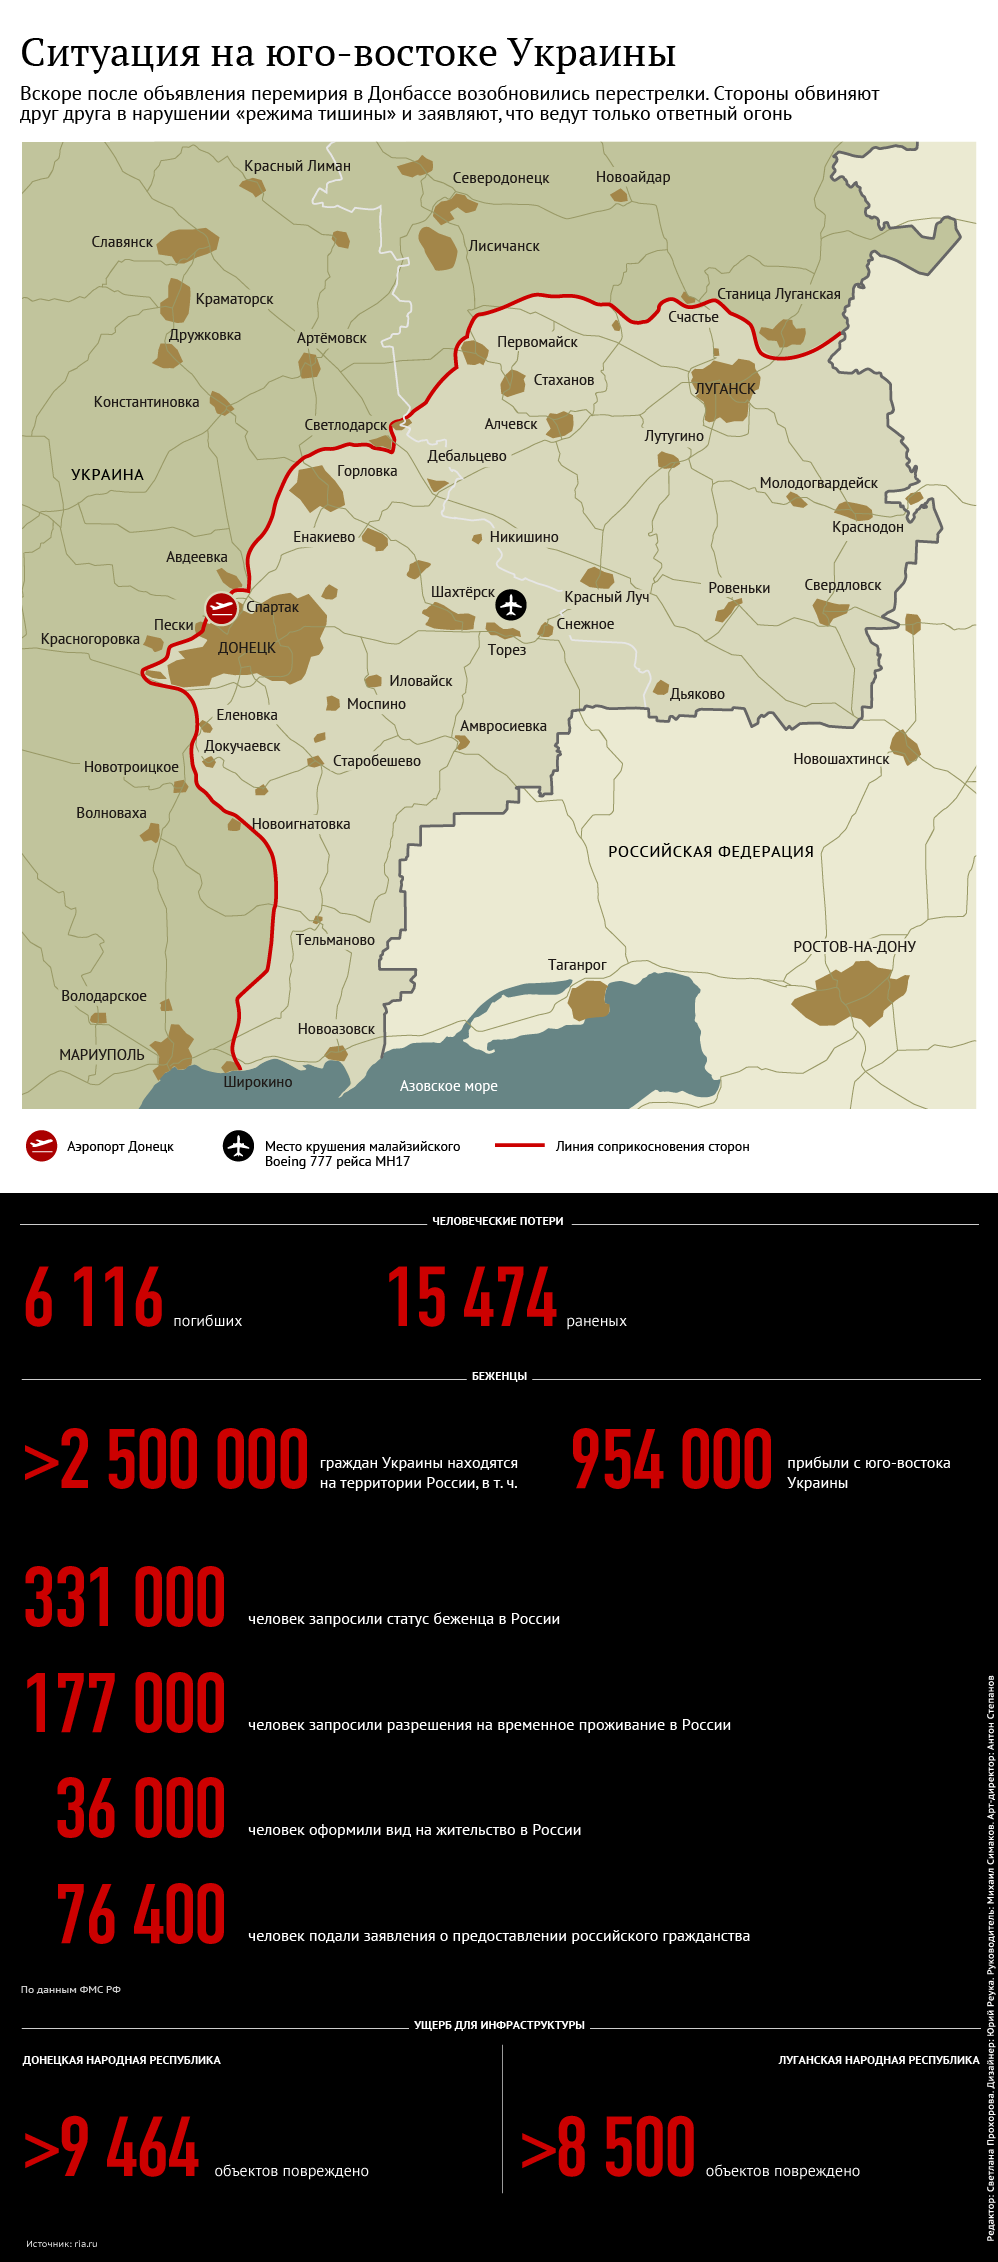 Ситуация на Юго-востоке Украины